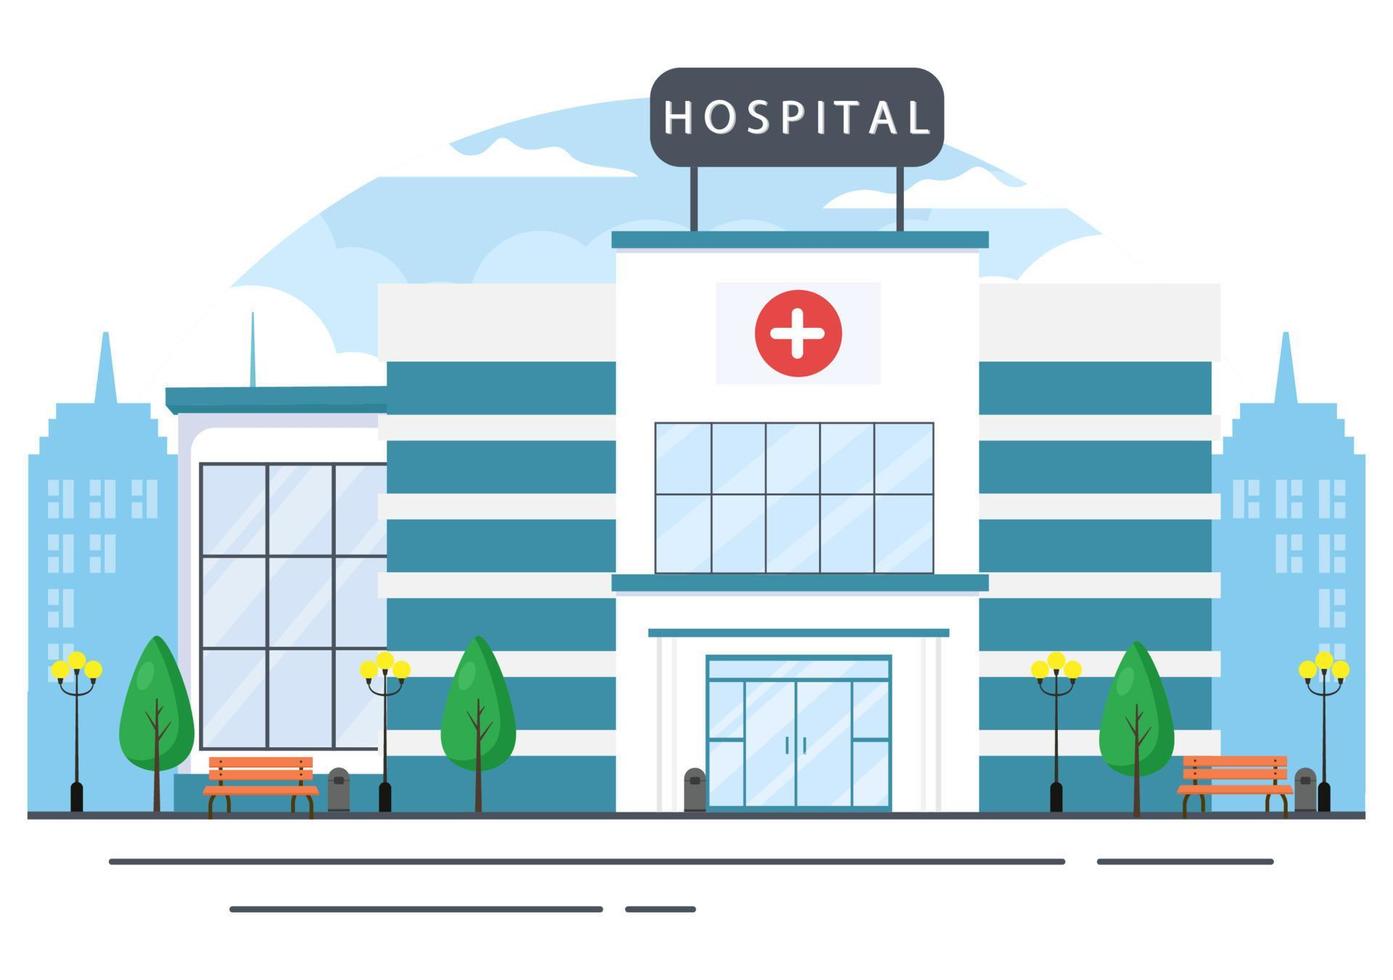 edifício de hospital para ilustração vetorial de fundo de saúde com ambulância, médico, paciente, enfermeiras e exterior de clínica médica vetor